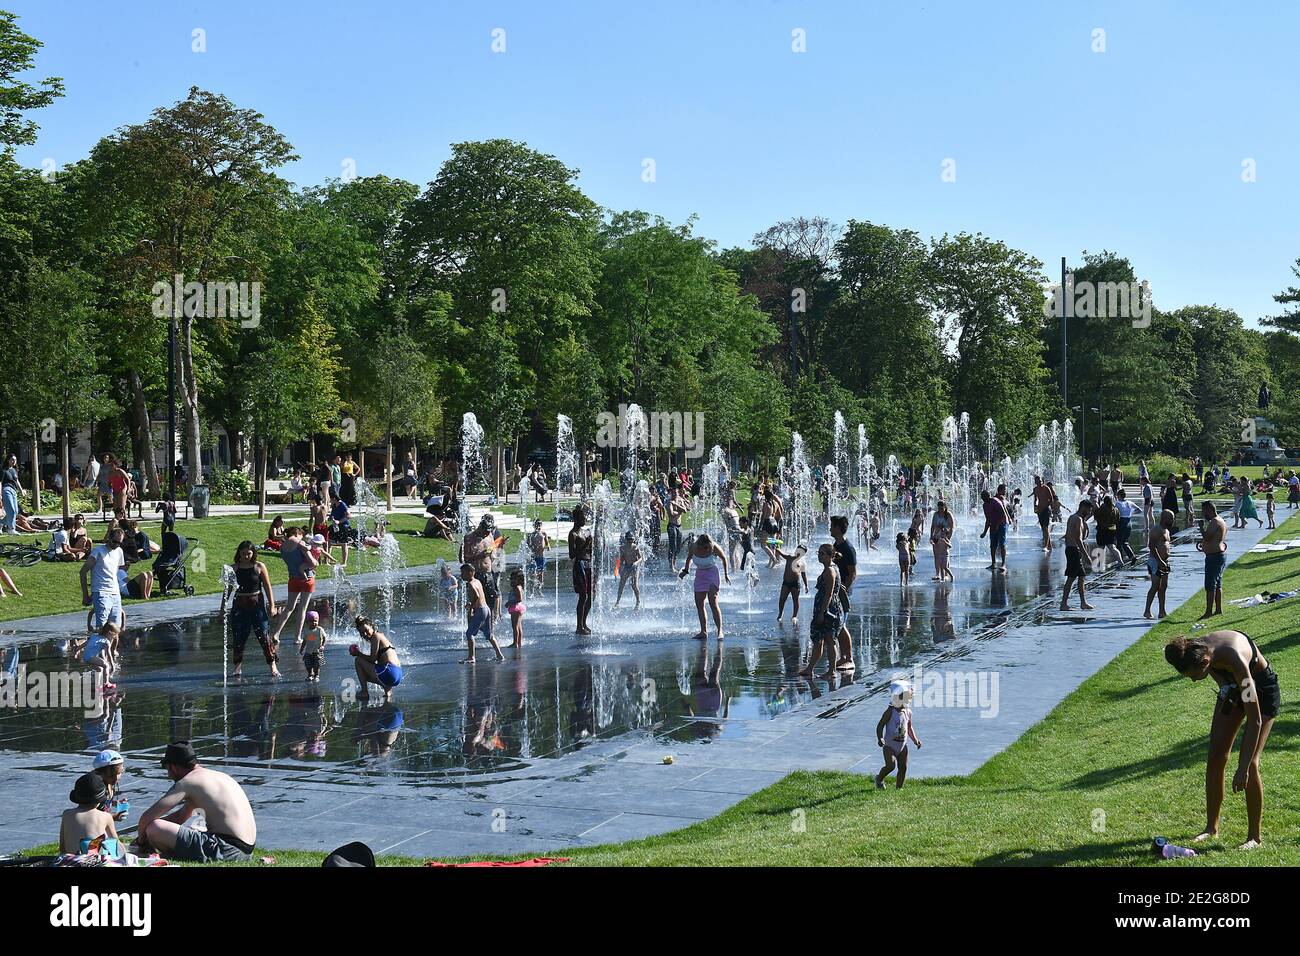 Reims (Francia nord-orientale): Onda di calore il 25 giugno 2020. Le persone che si godono i getti d'acqua lungo la Jean-Louis Schneiter Promenade Foto Stock